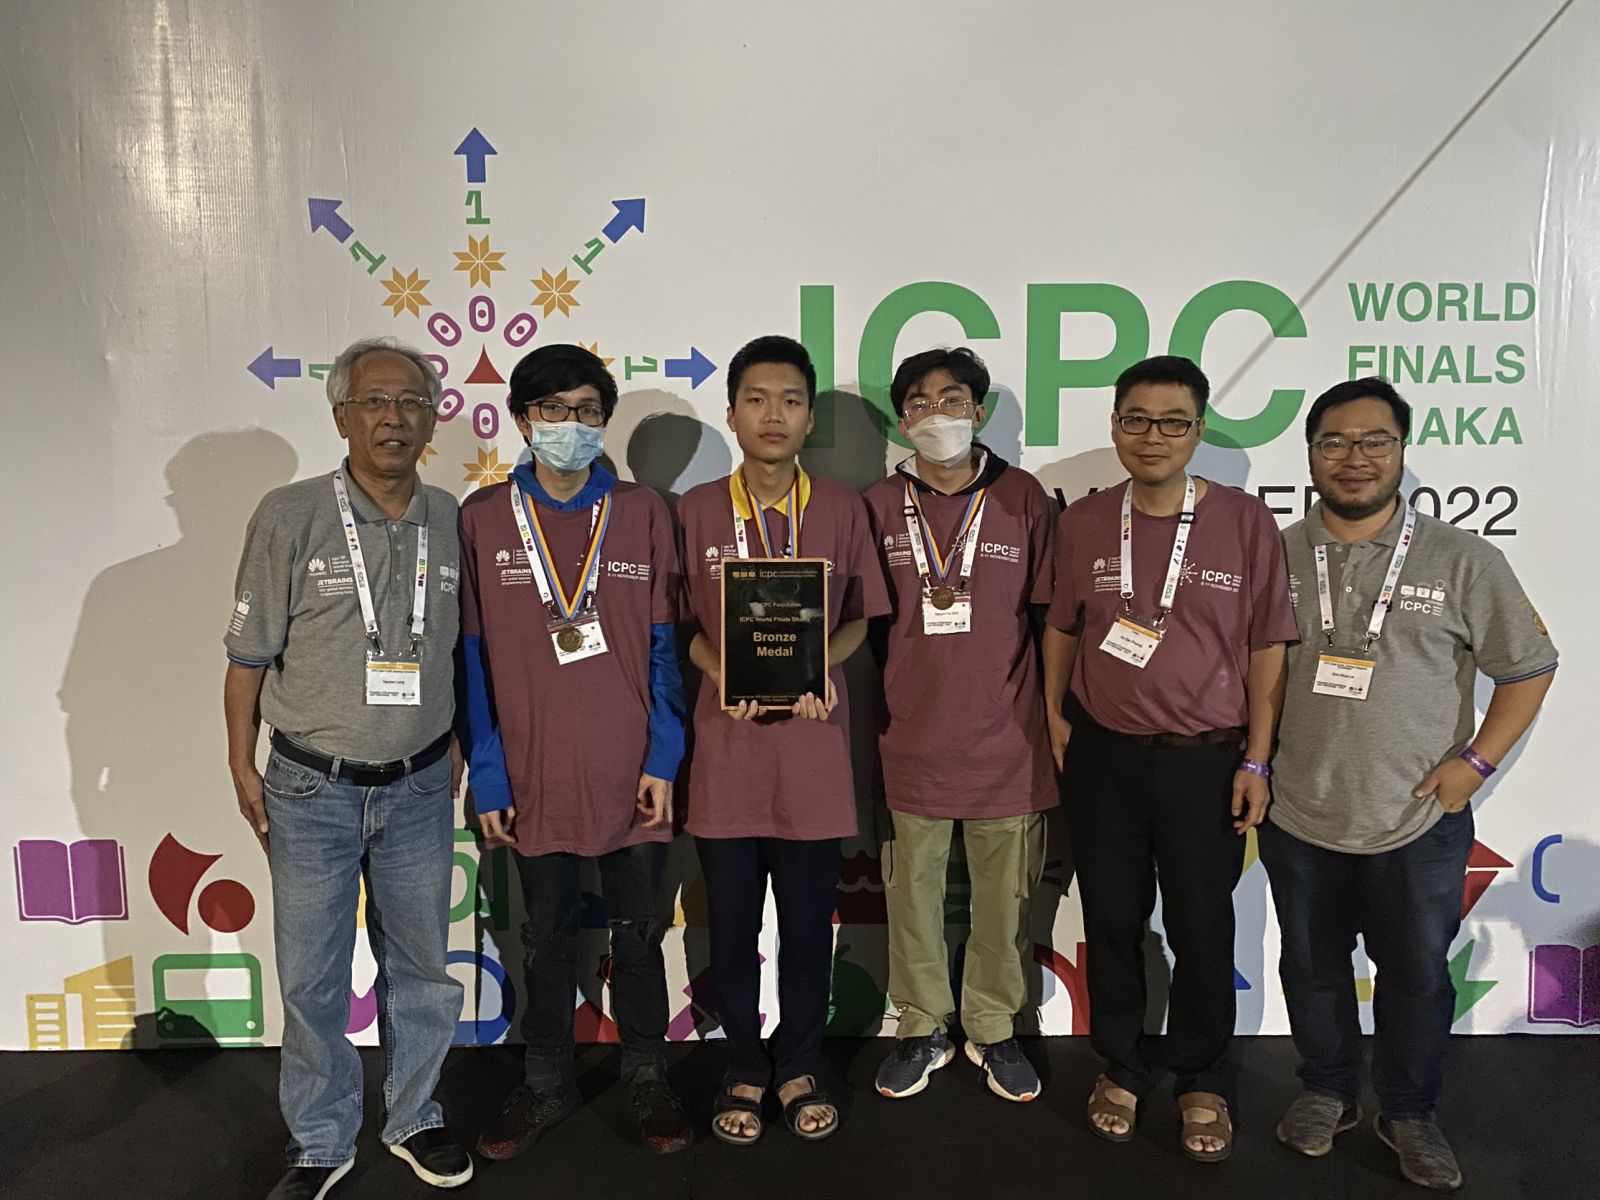 Việt Nam lần đầu có giải tại cuộc thi lập trình sinh viên quốc tế ICPC